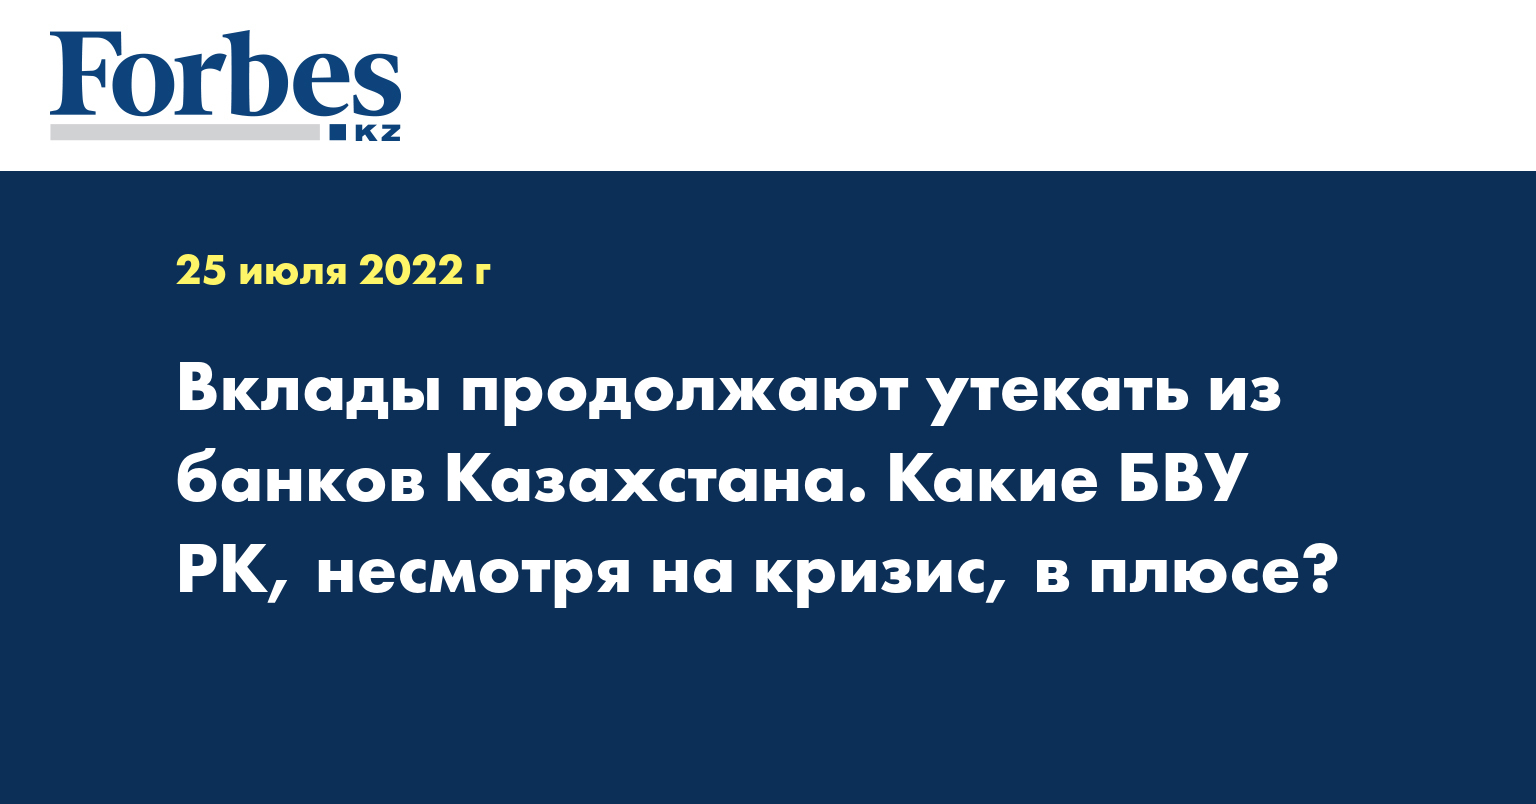 Вклады продолжают утекать из банков Казахстана. Какие БВУ РК, несмотря на кризис, в плюсе?